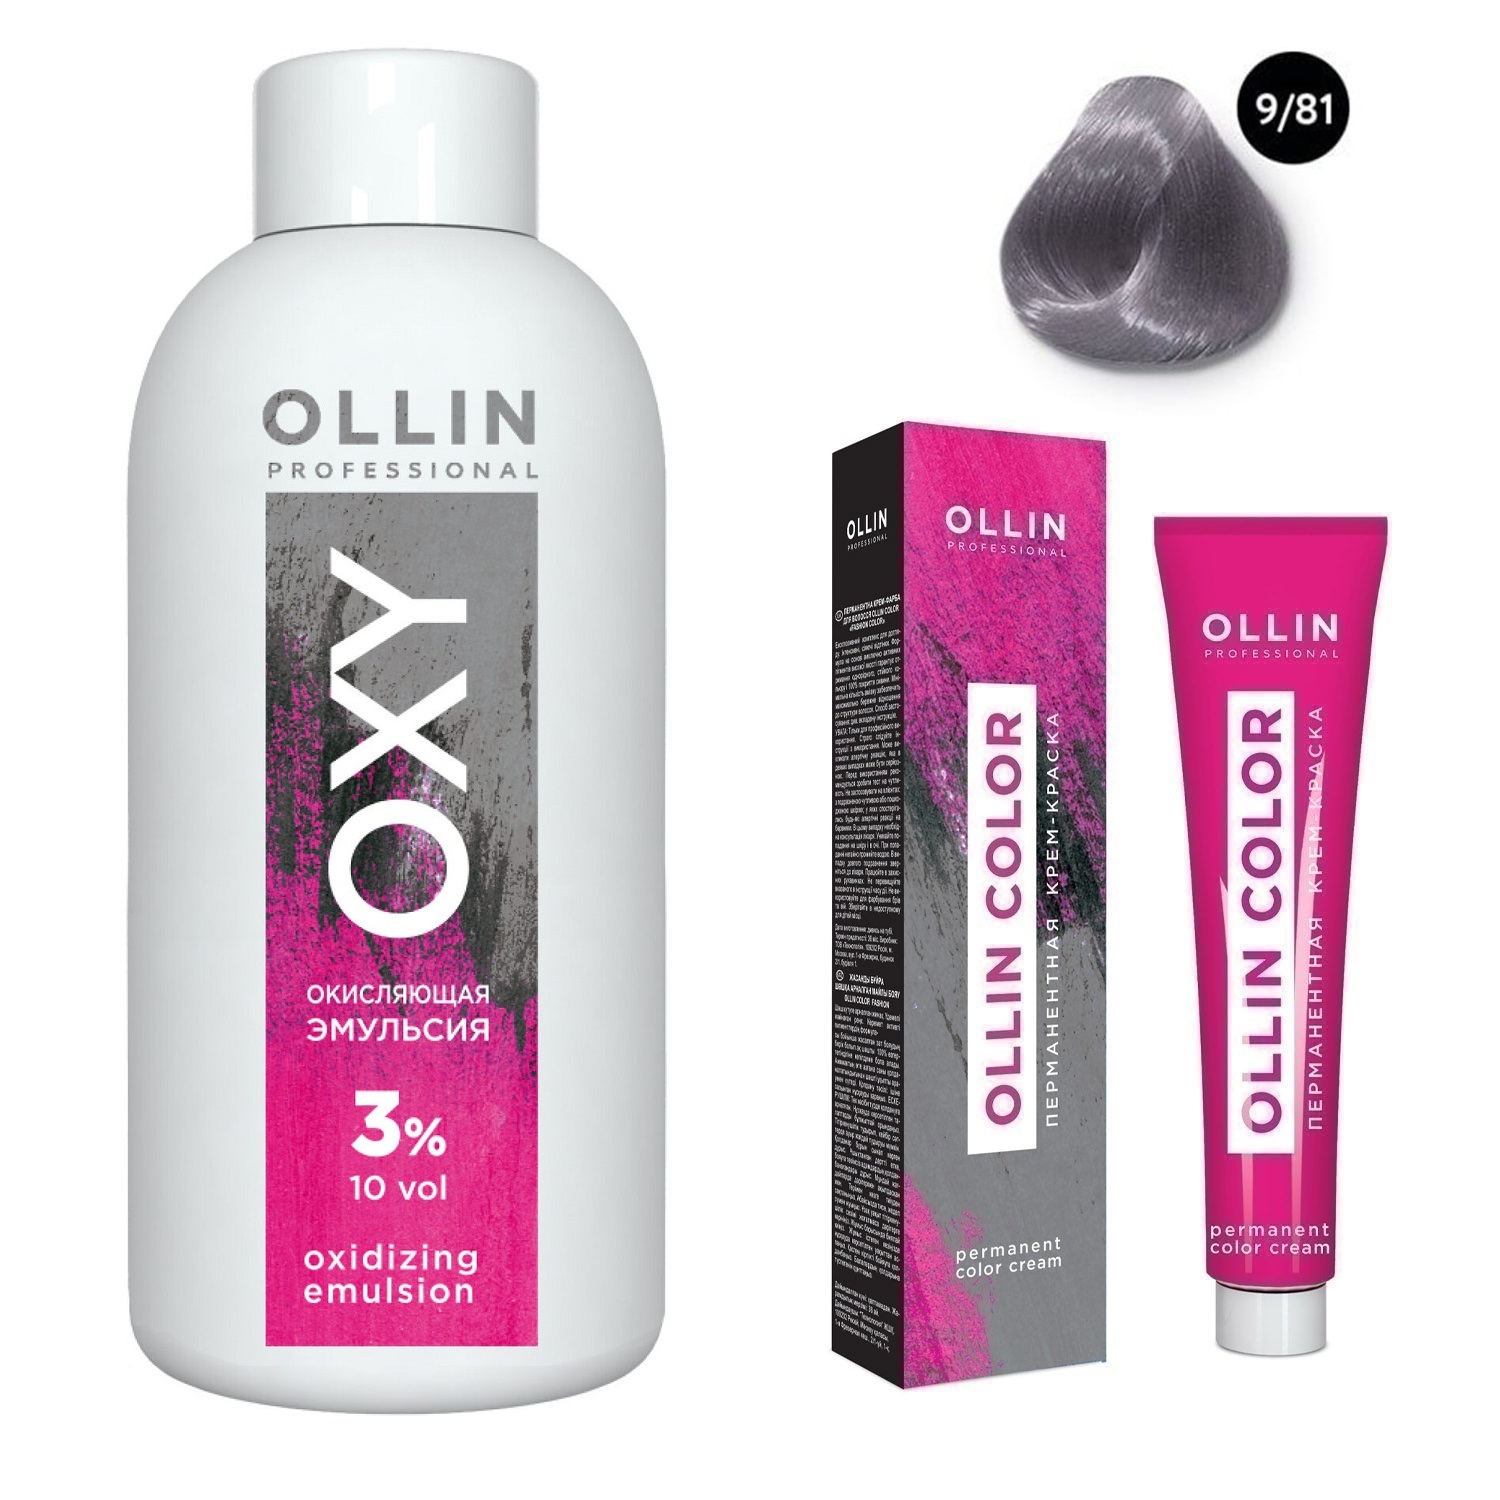 Ollin Professional Набор Перманентная крем-краска для волос Ollin Color оттенок 9/81 блондин жемчужно-пепельный 100 мл + Окисляющая эмульсия Oxy 3% 150 мл (Ollin Professional, Ollin Color) окисляющая эмульсия oxy 9% 1000 мл